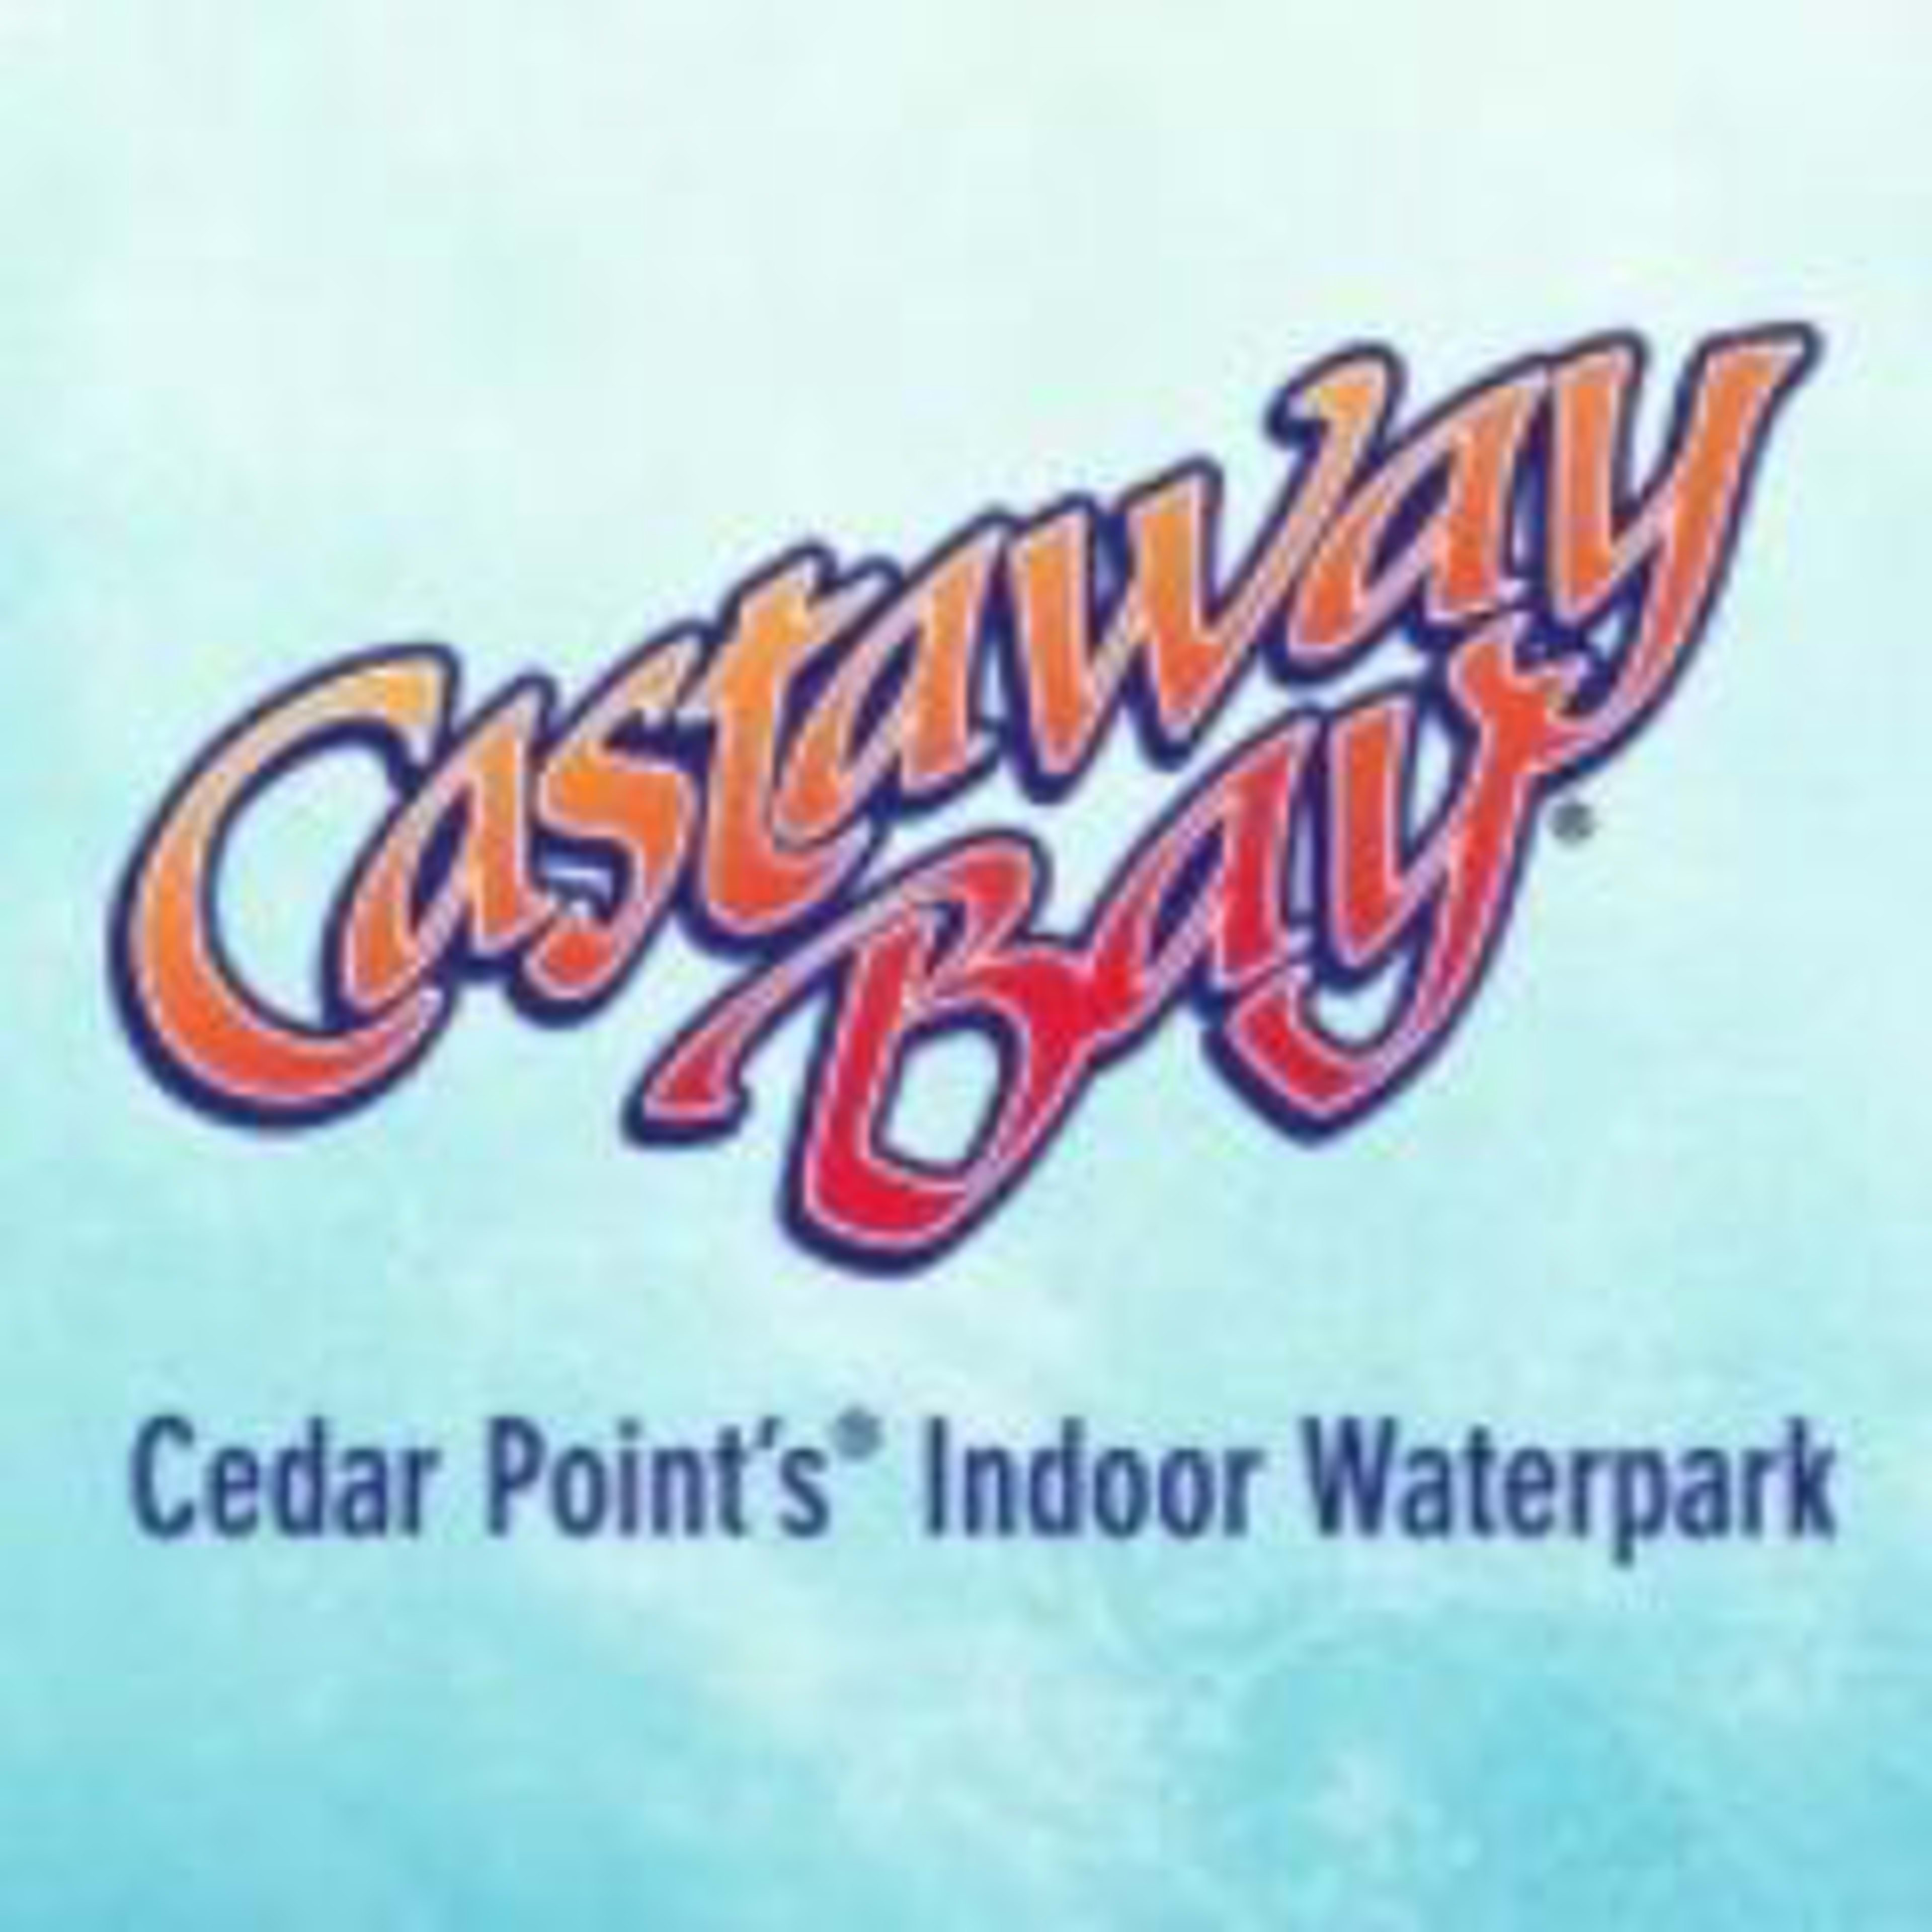 Castaway Bay Code